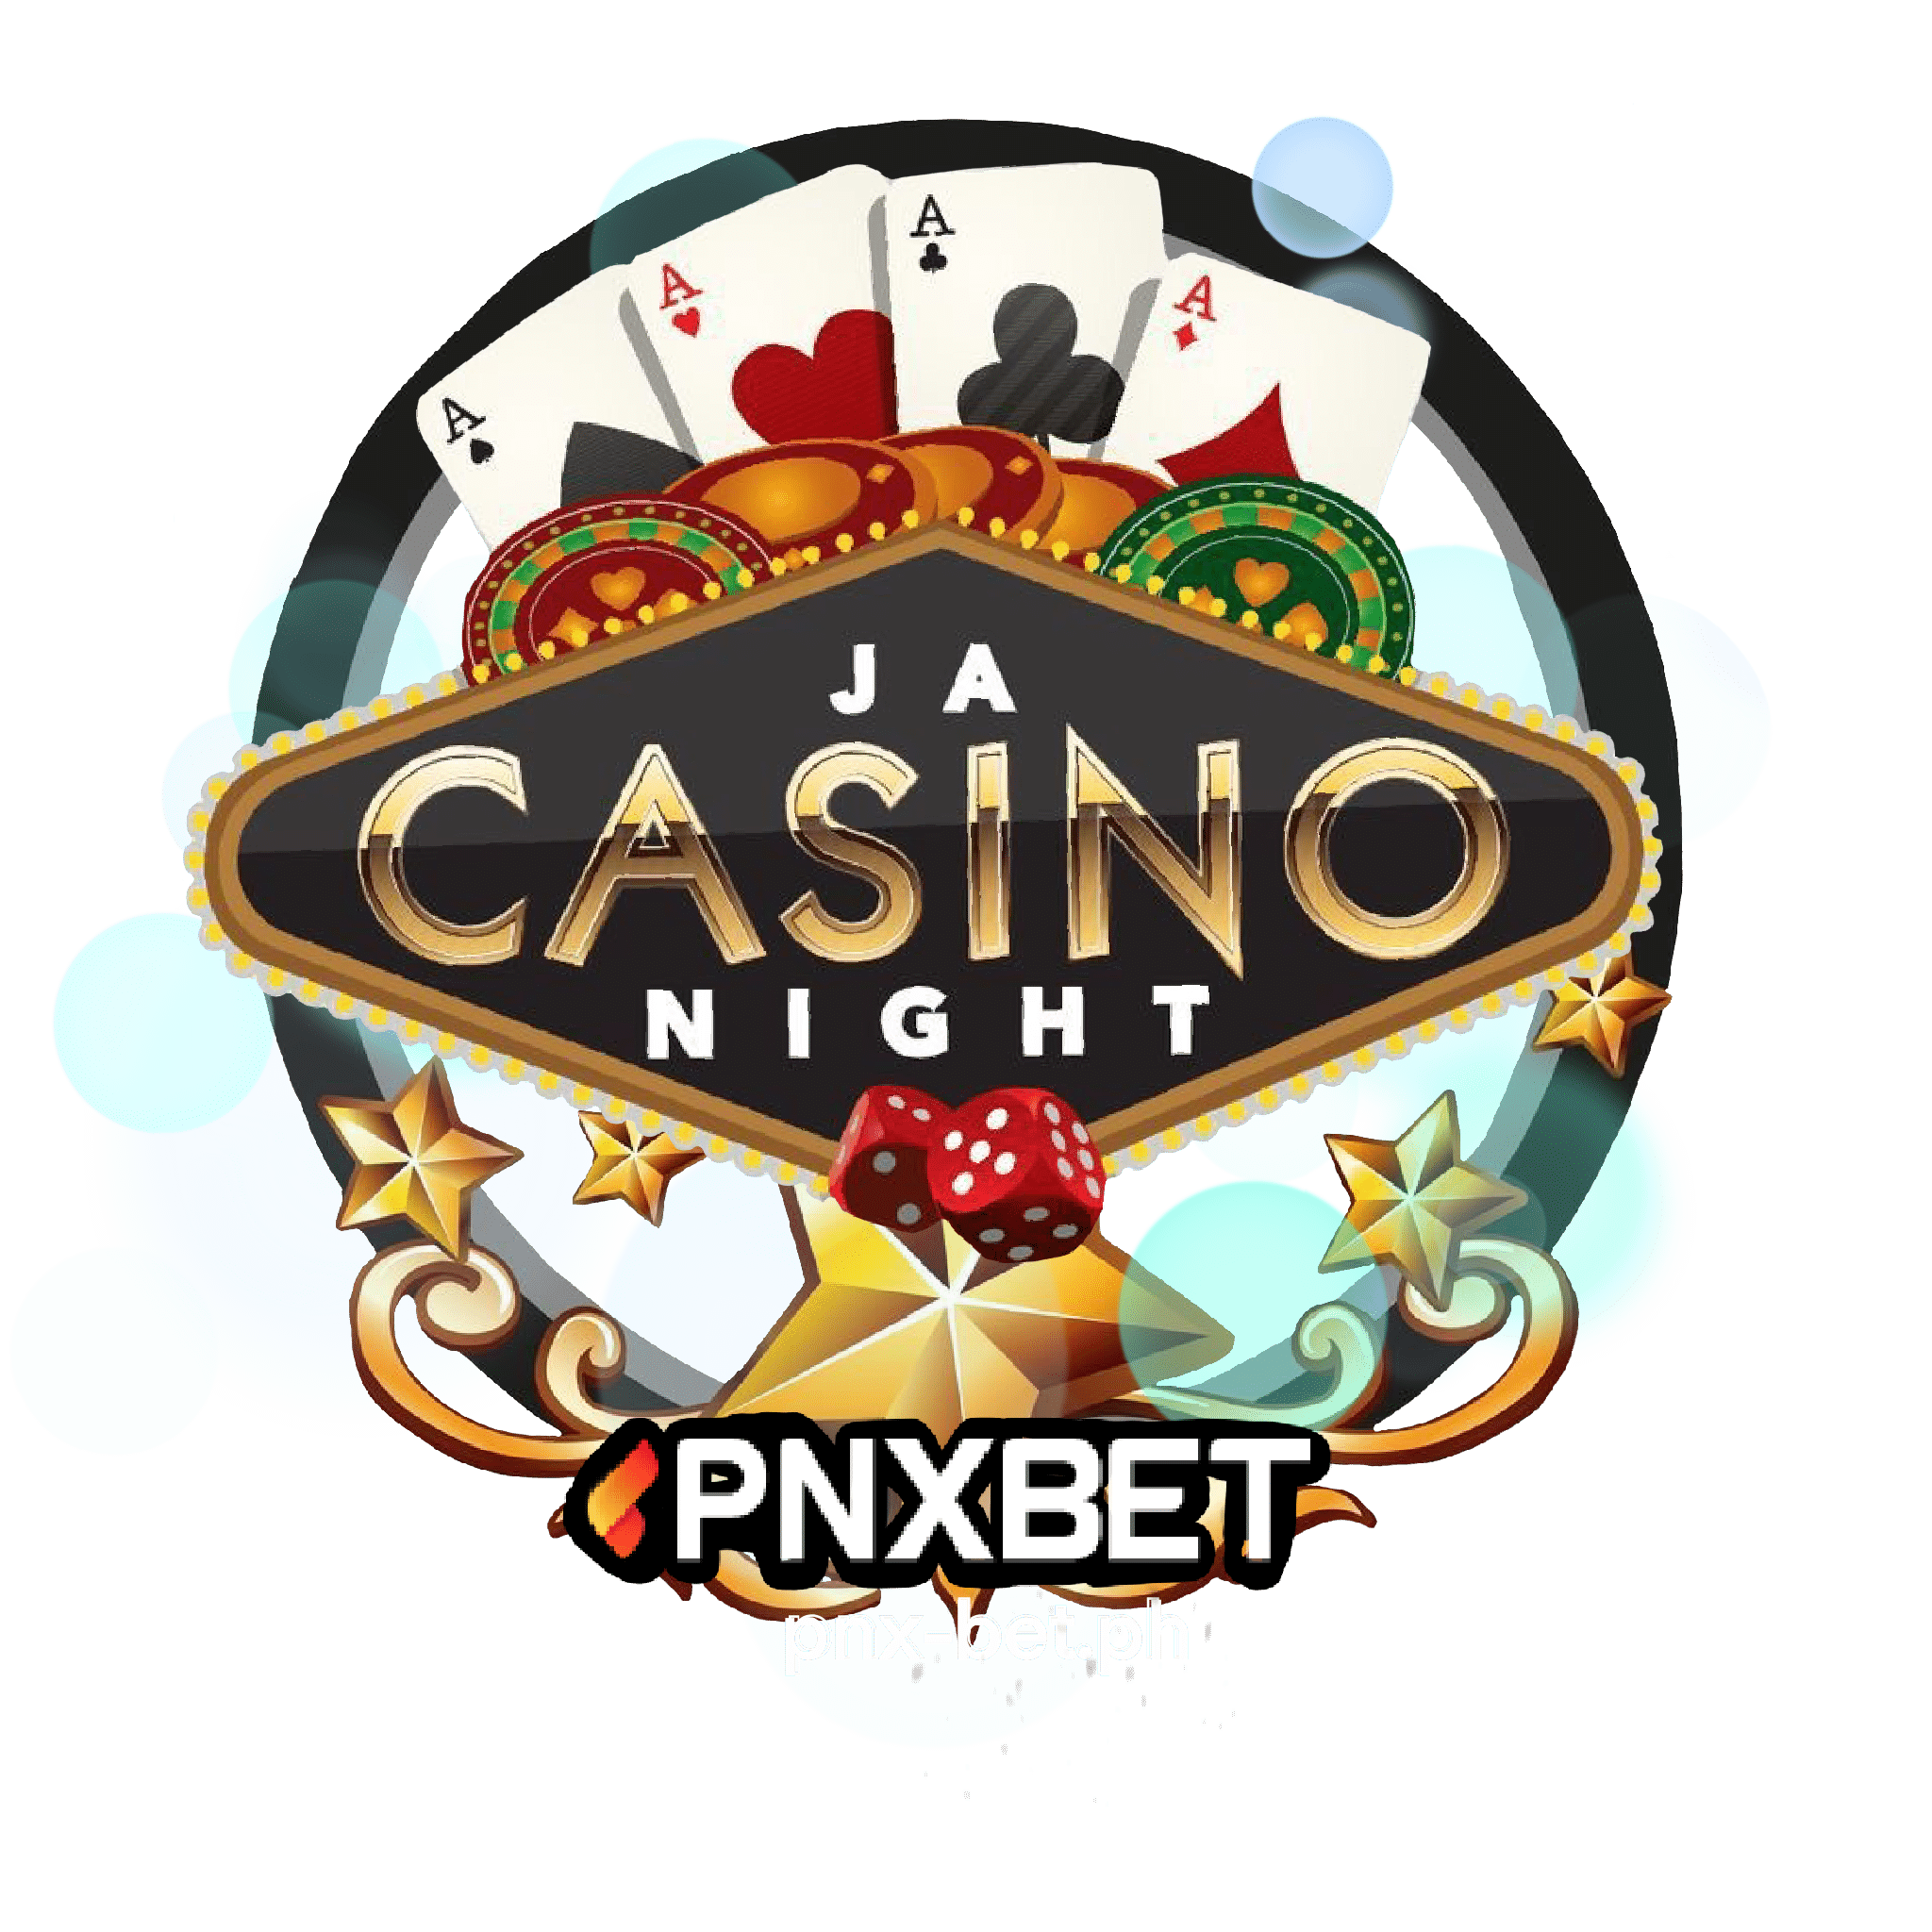 PNXBET casino